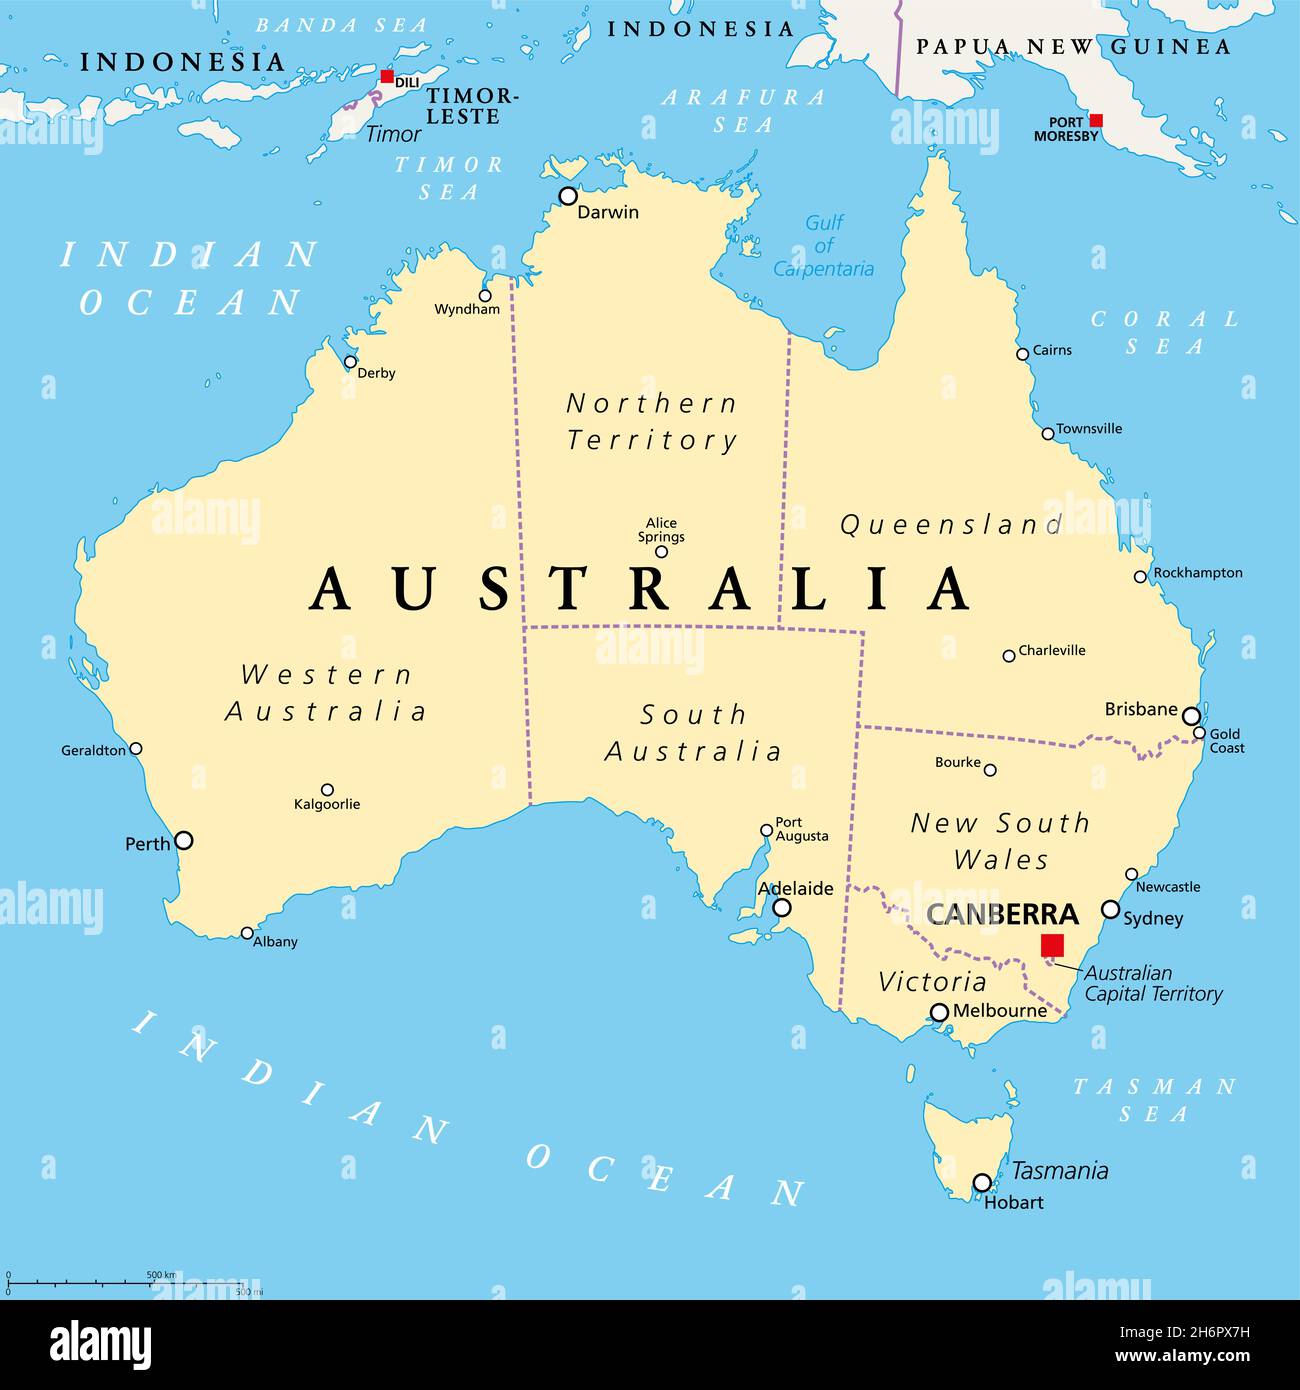 Australia, mapa político, con la capital Canberra, fronteras administrativas internas y las ciudades más importantes. Commonwealth de Australia. Foto de stock